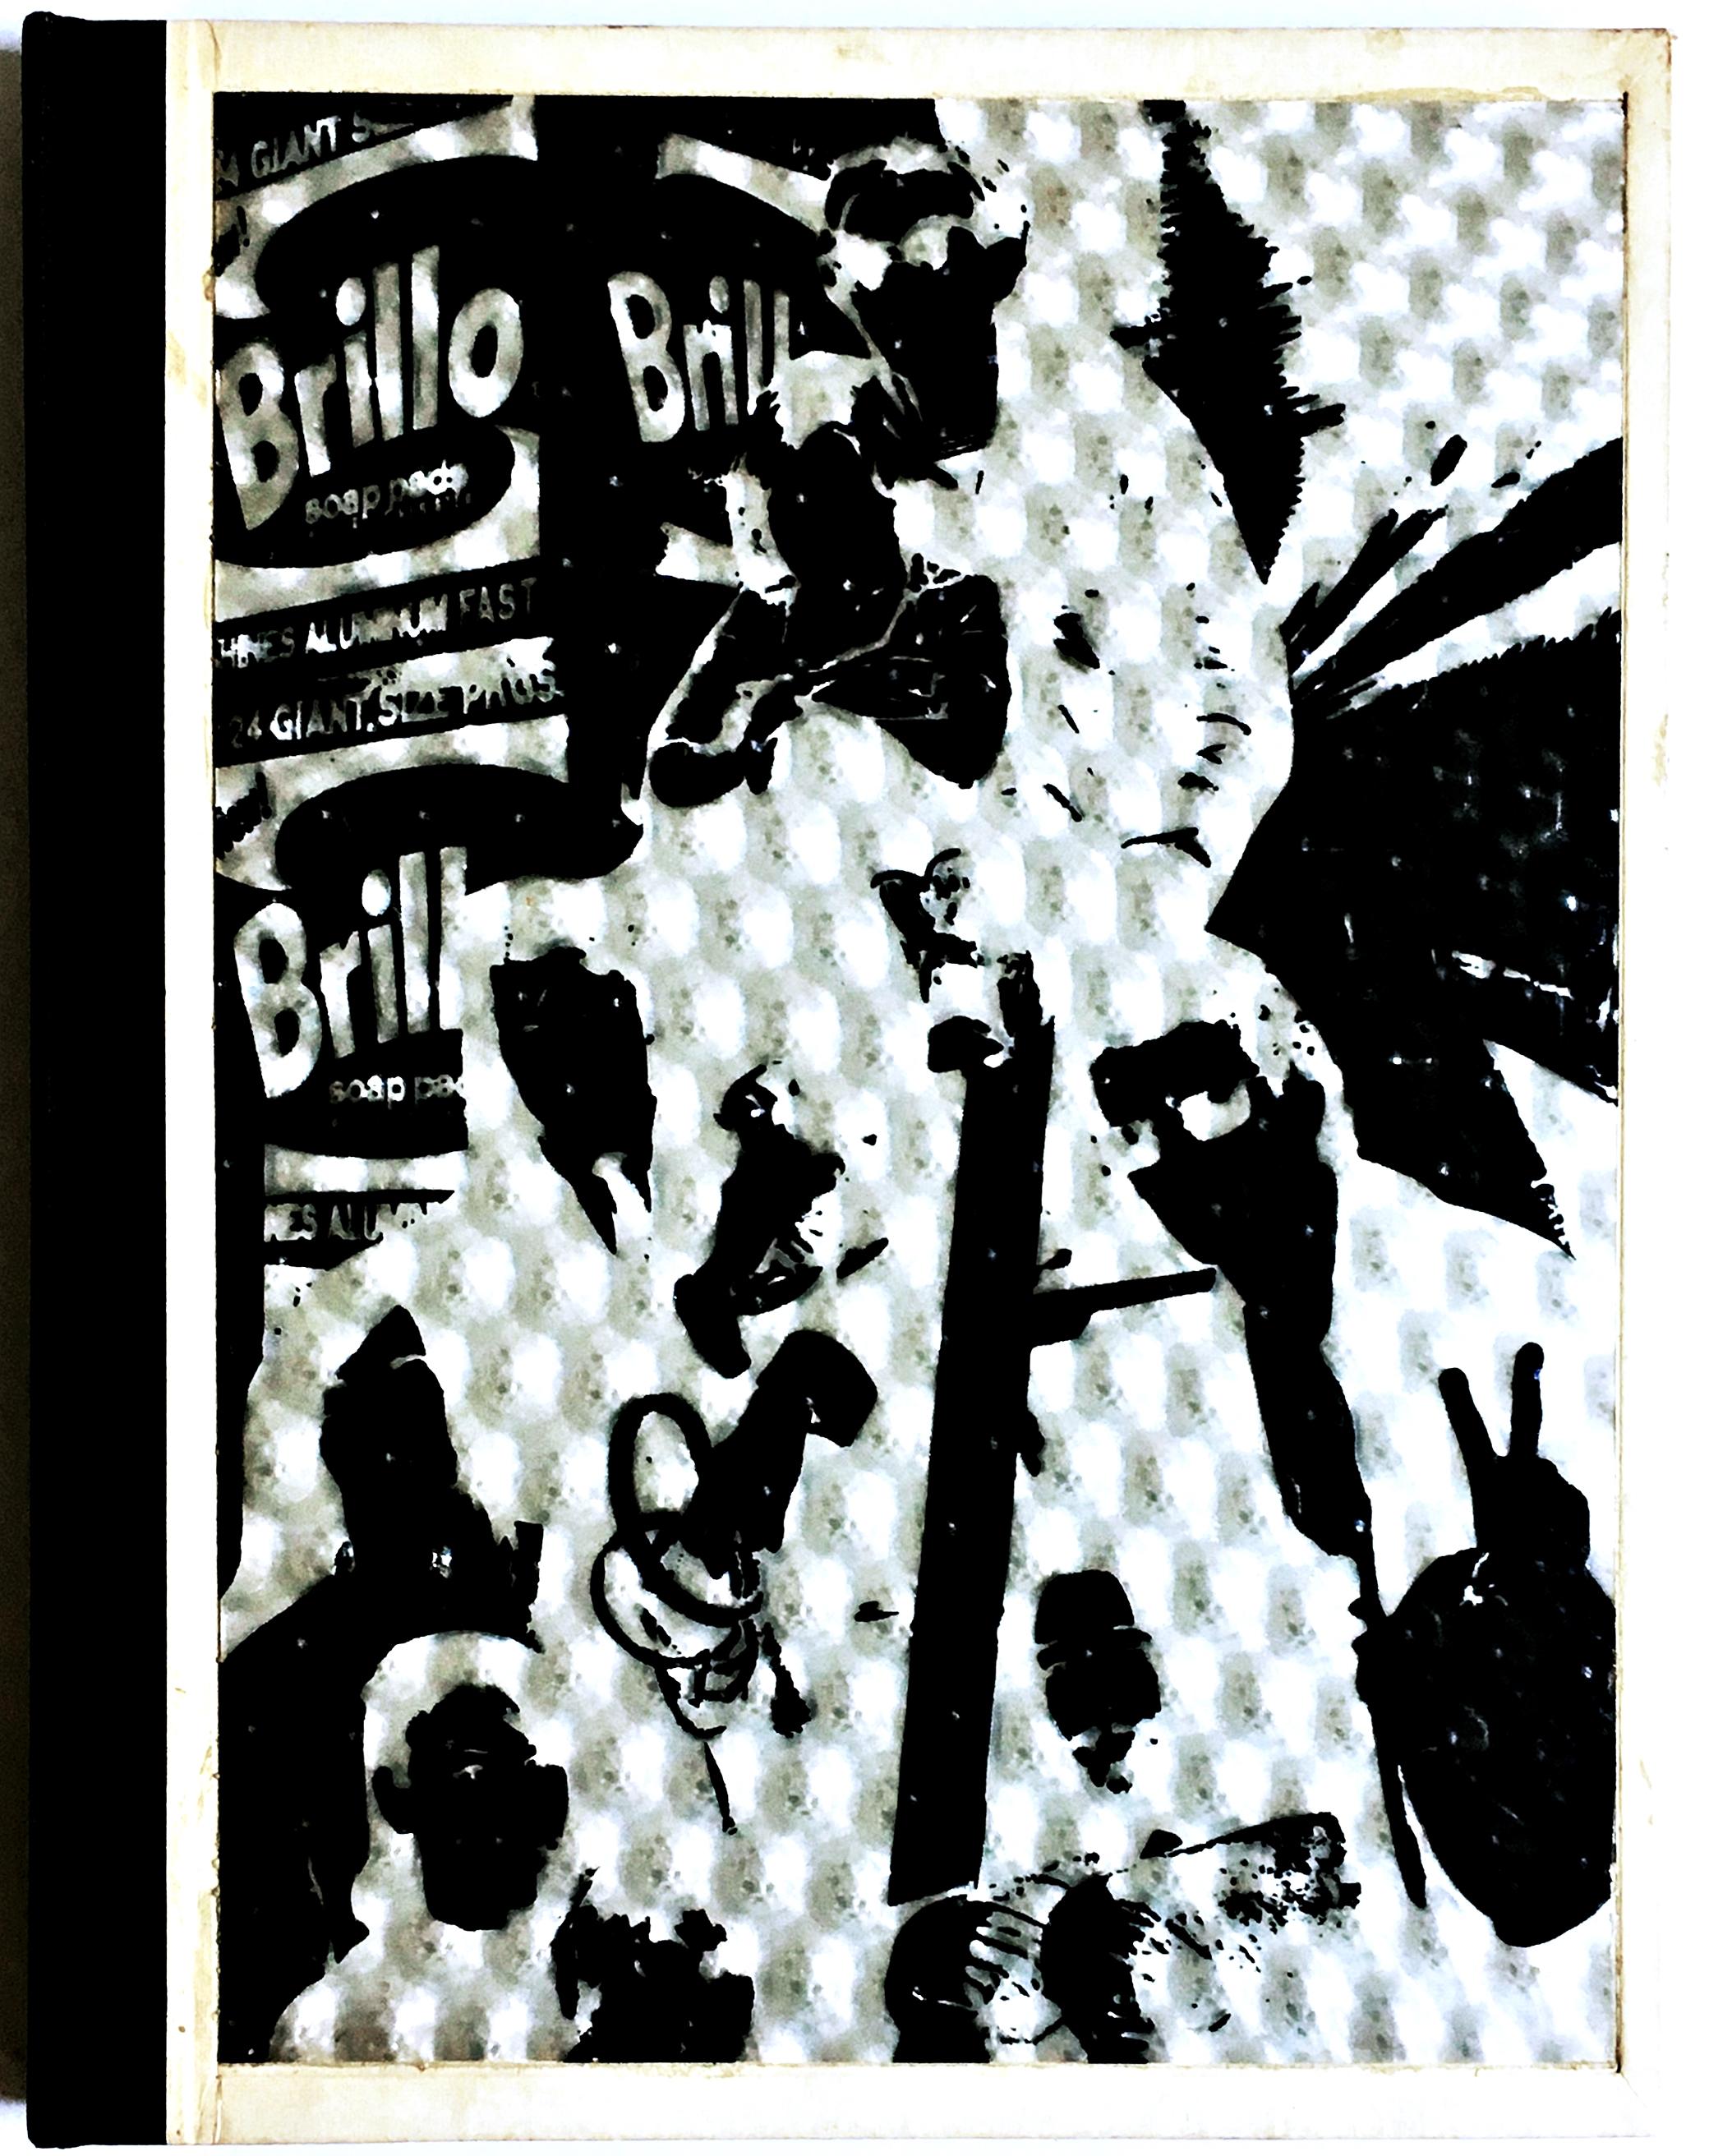 Andy Warhol
Andy Warhols Indexbuch, 1967
Erste Ausgabe der gebundenen Monografie mit silbernem holografischem Einband und mehreren 3-D-Einlagen.
Enthält mehrere 3-D-Einsätze.
11 1/4 × 8 3/4 × 1/2 Zoll
Ungerahmt
Diese echte Erstausgabe dieses